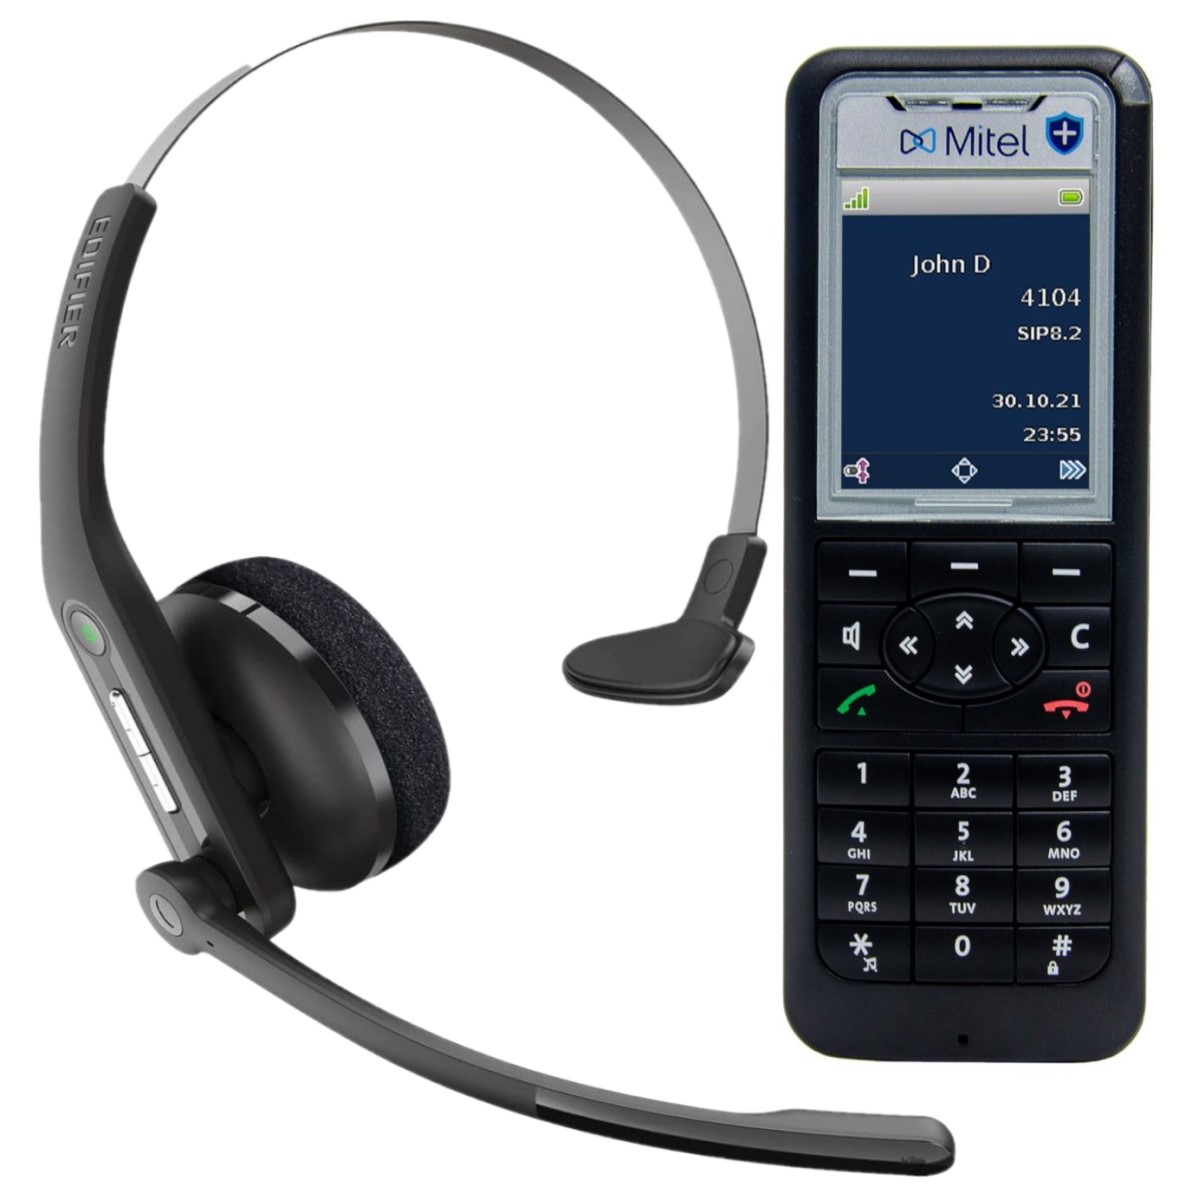 Aanvullend combopakket Mitel 622dt met headset Bluetooth image